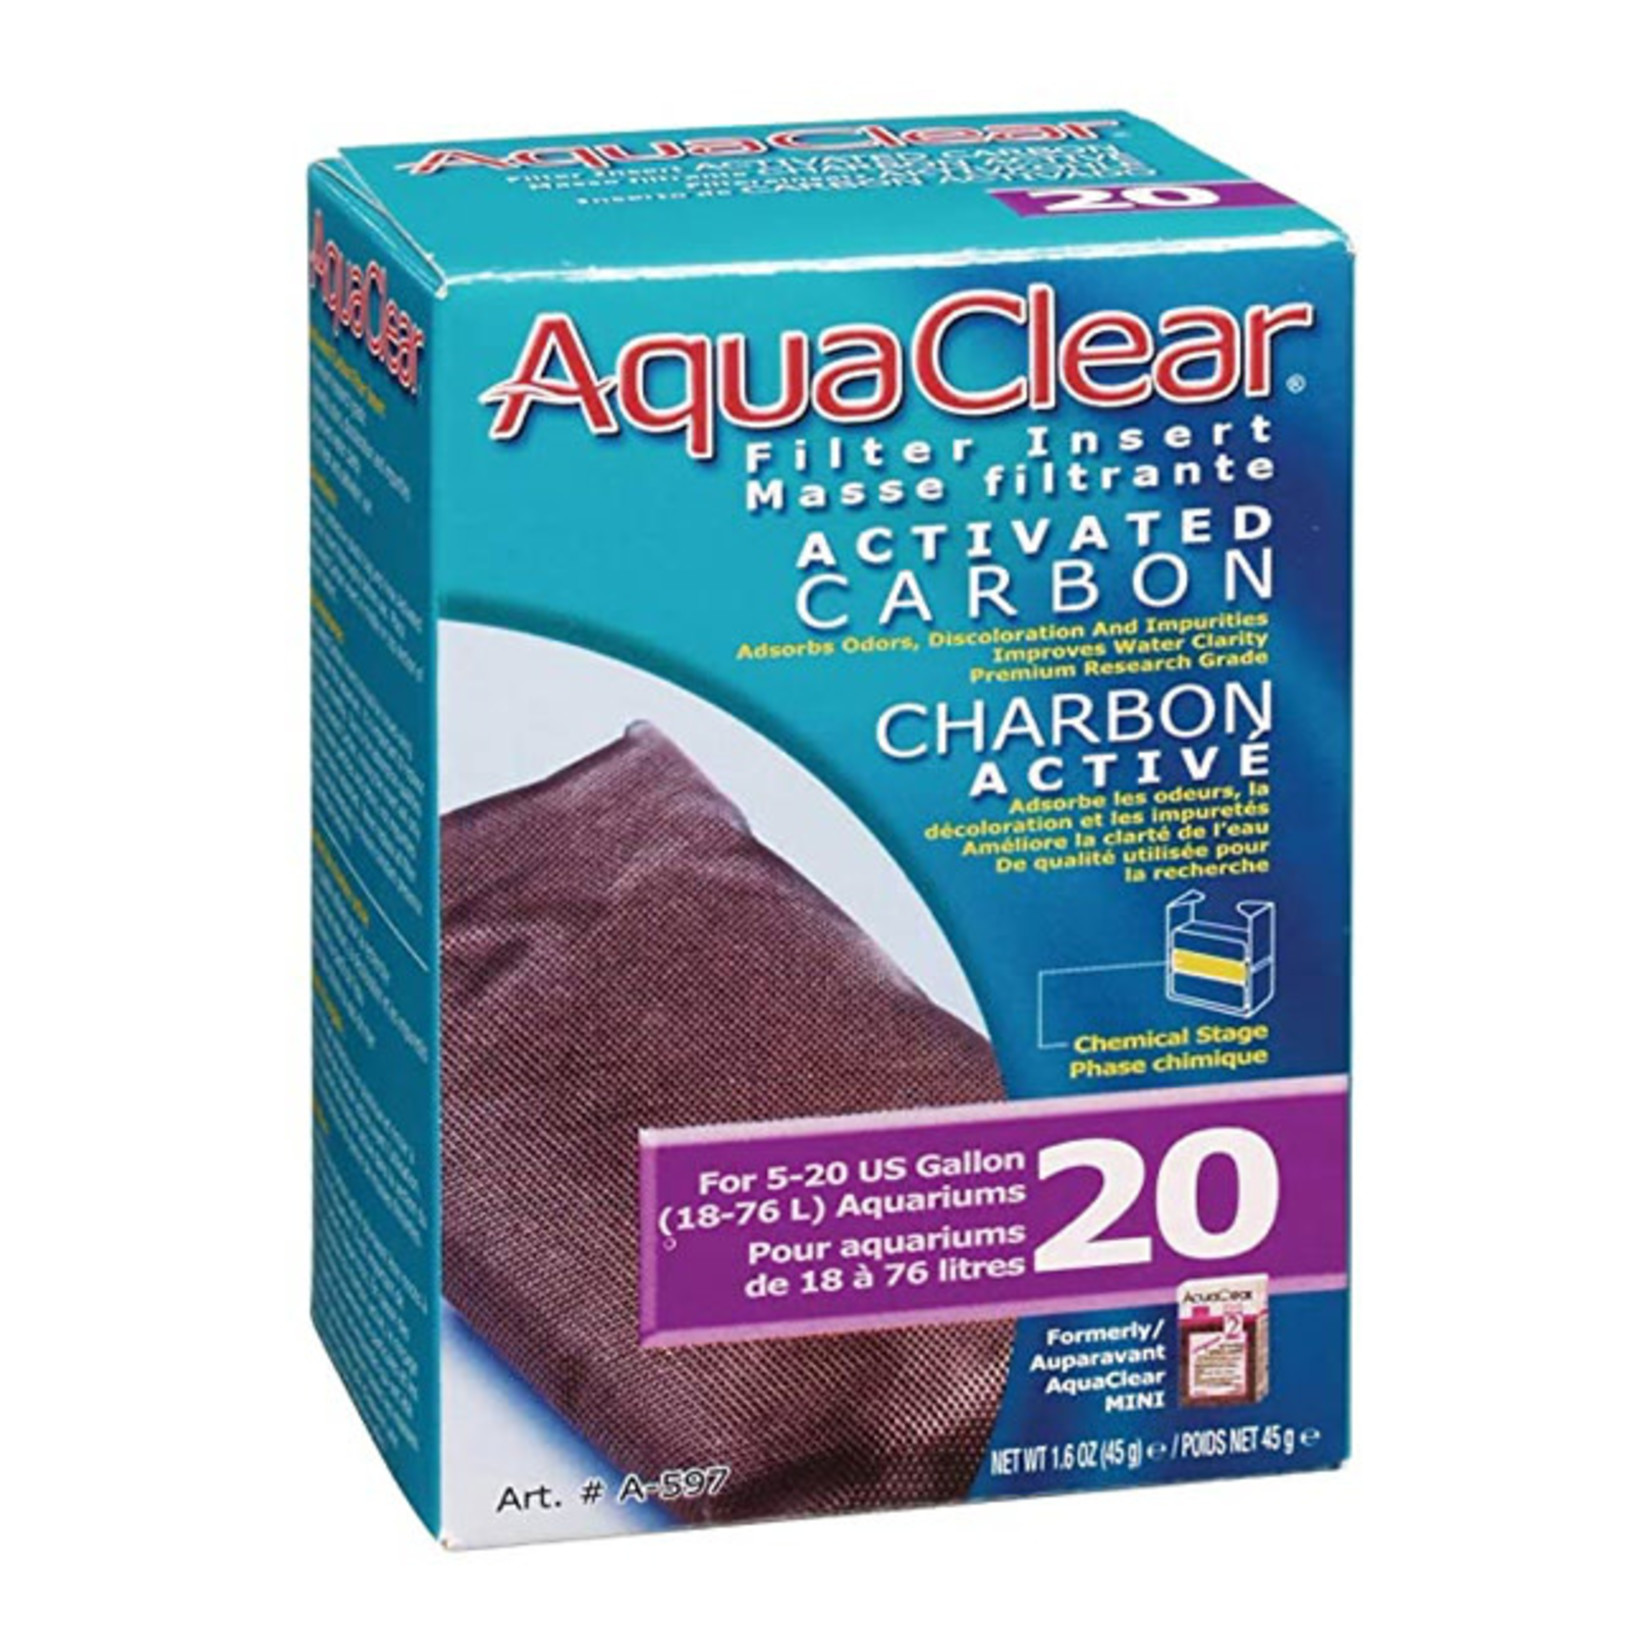 AquaClear AquaClear Filter Insert Activated Carbon